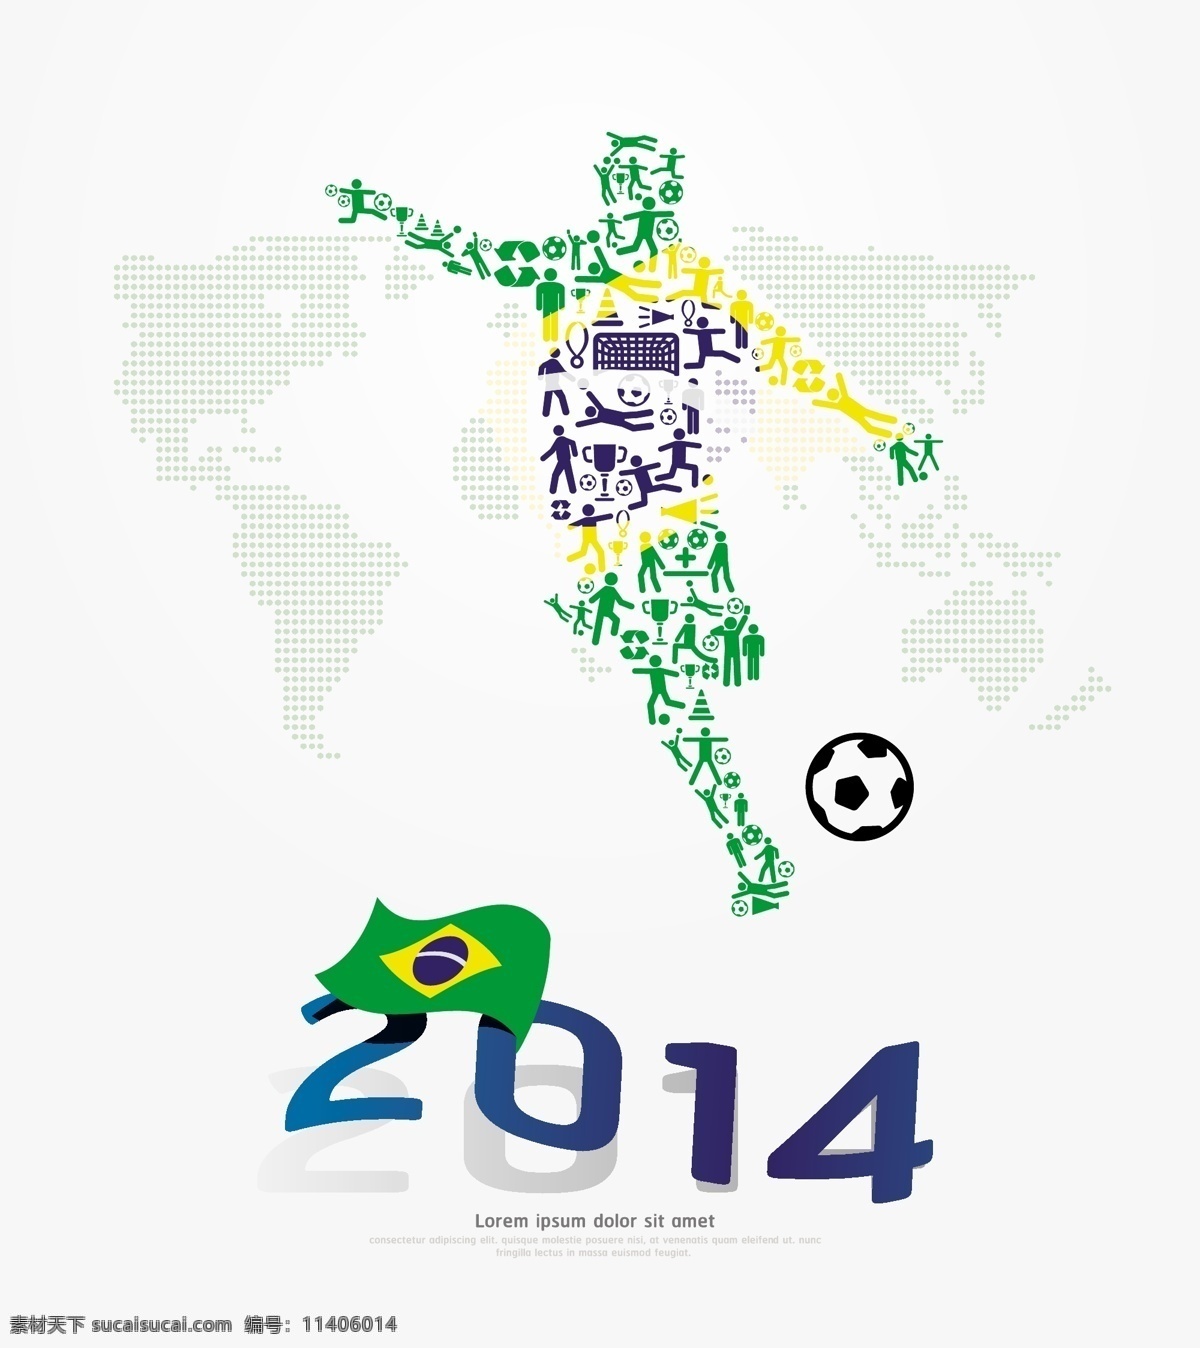 世界杯 背景 矢量 足球 运动员 人物 踢球 地图 创意 拼接 抽象 国旗 运动 体育 体育运动 赛事 比赛 插画 海报 画册 文化艺术 白色